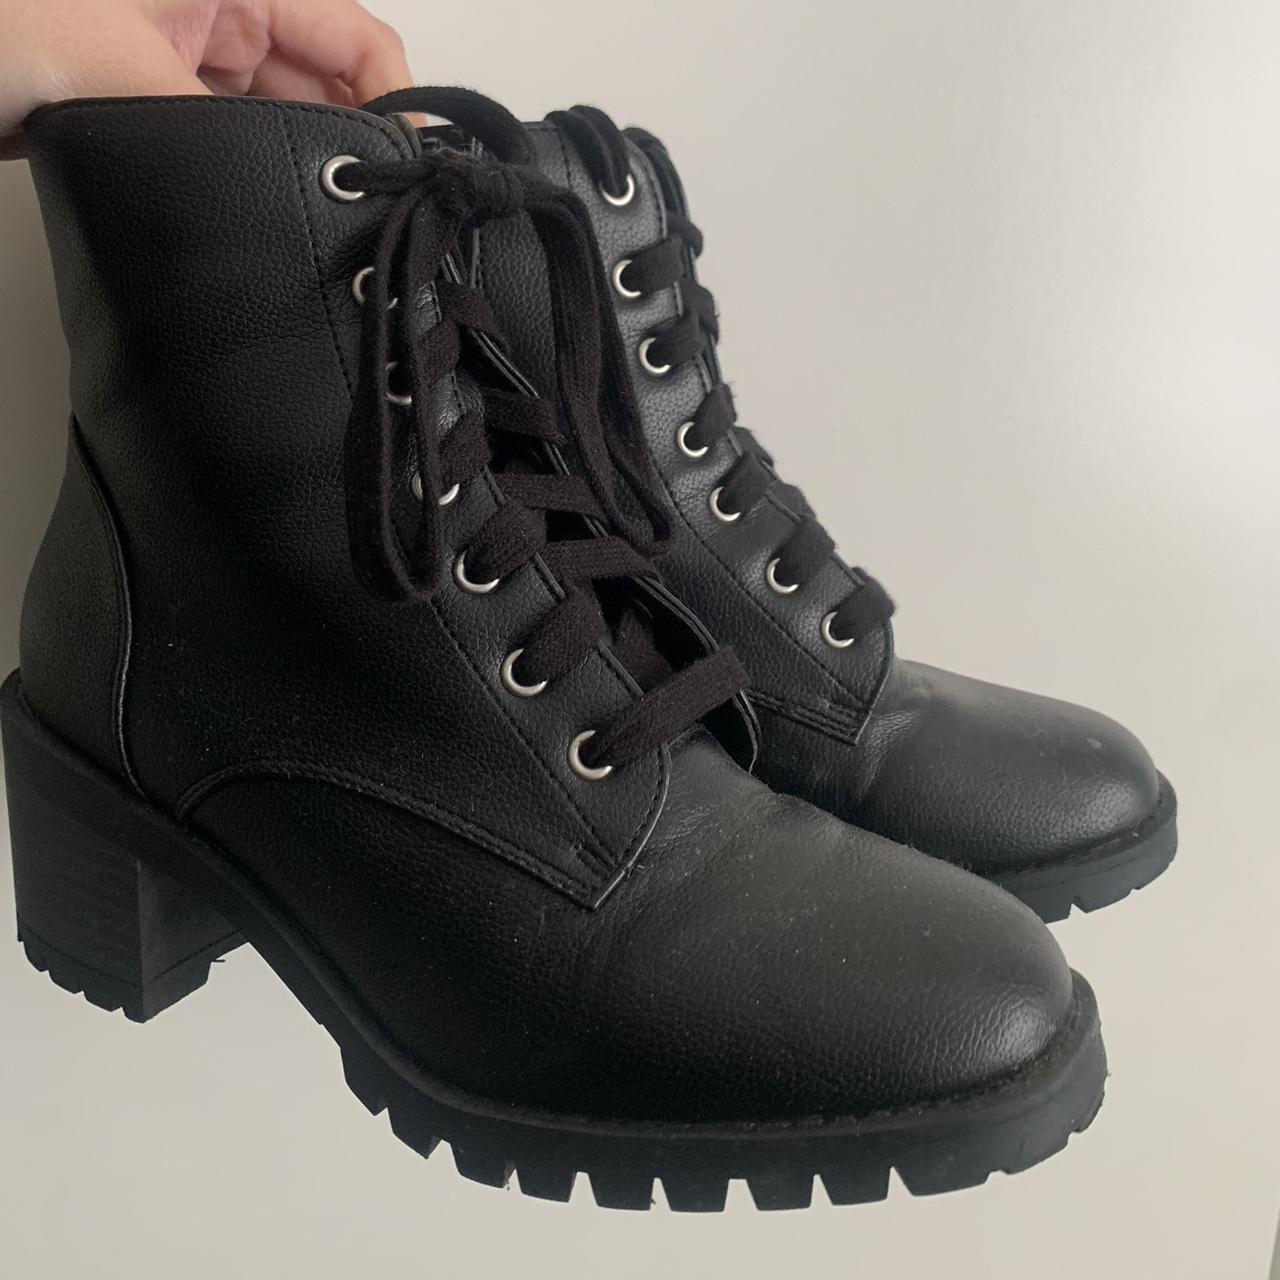 Primark Women's Black Boots | Depop